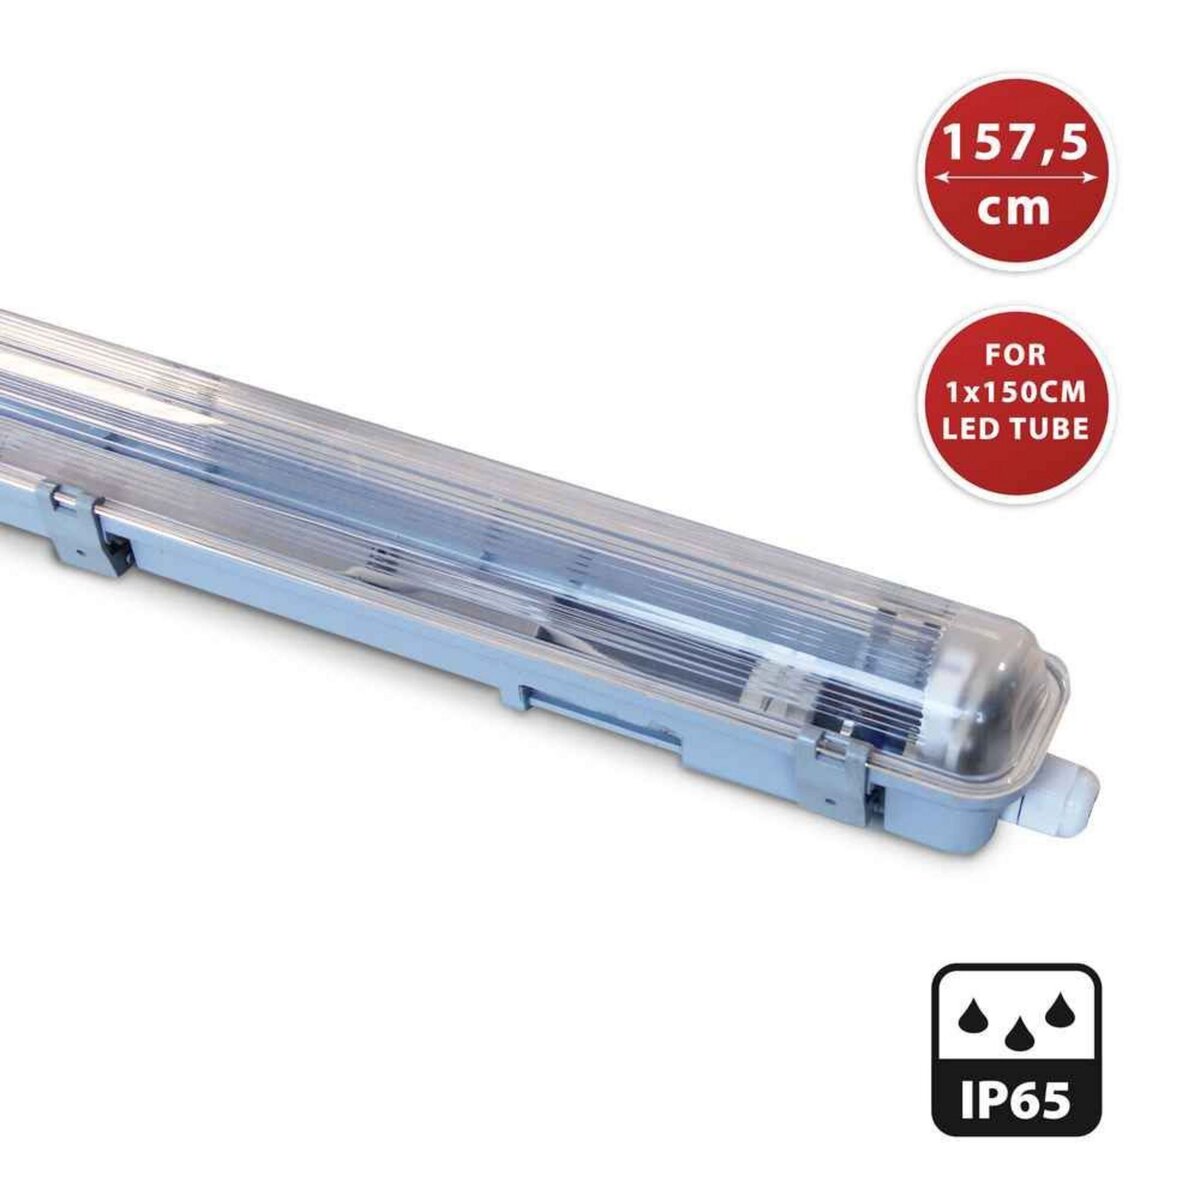 VELAMP Réglette exclusivement pour 1 tube LED de 150cm - IP65